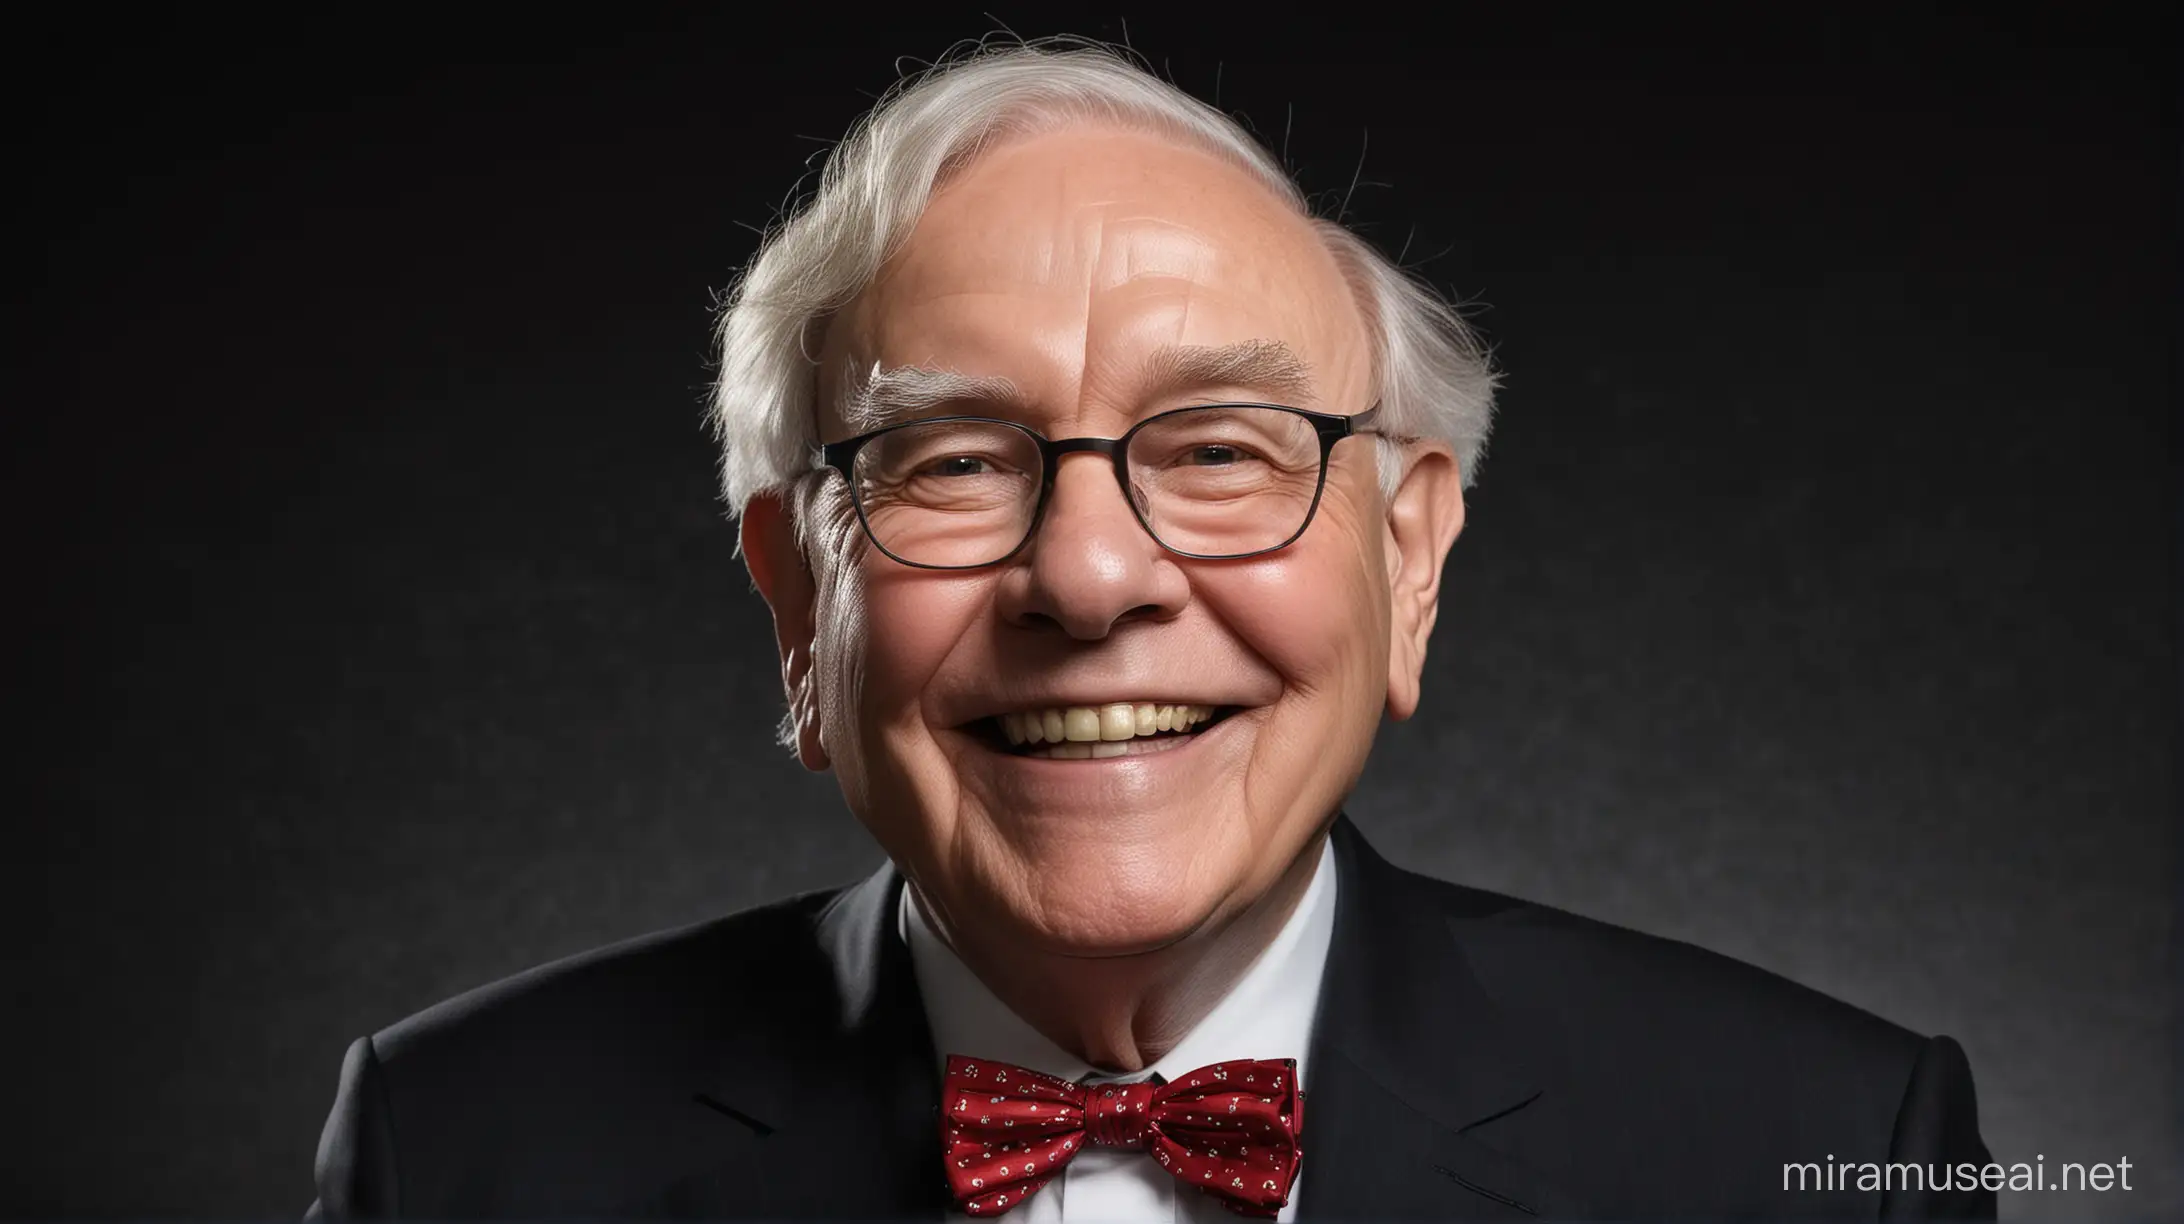 Warren Buffett in Happy  mode with black background